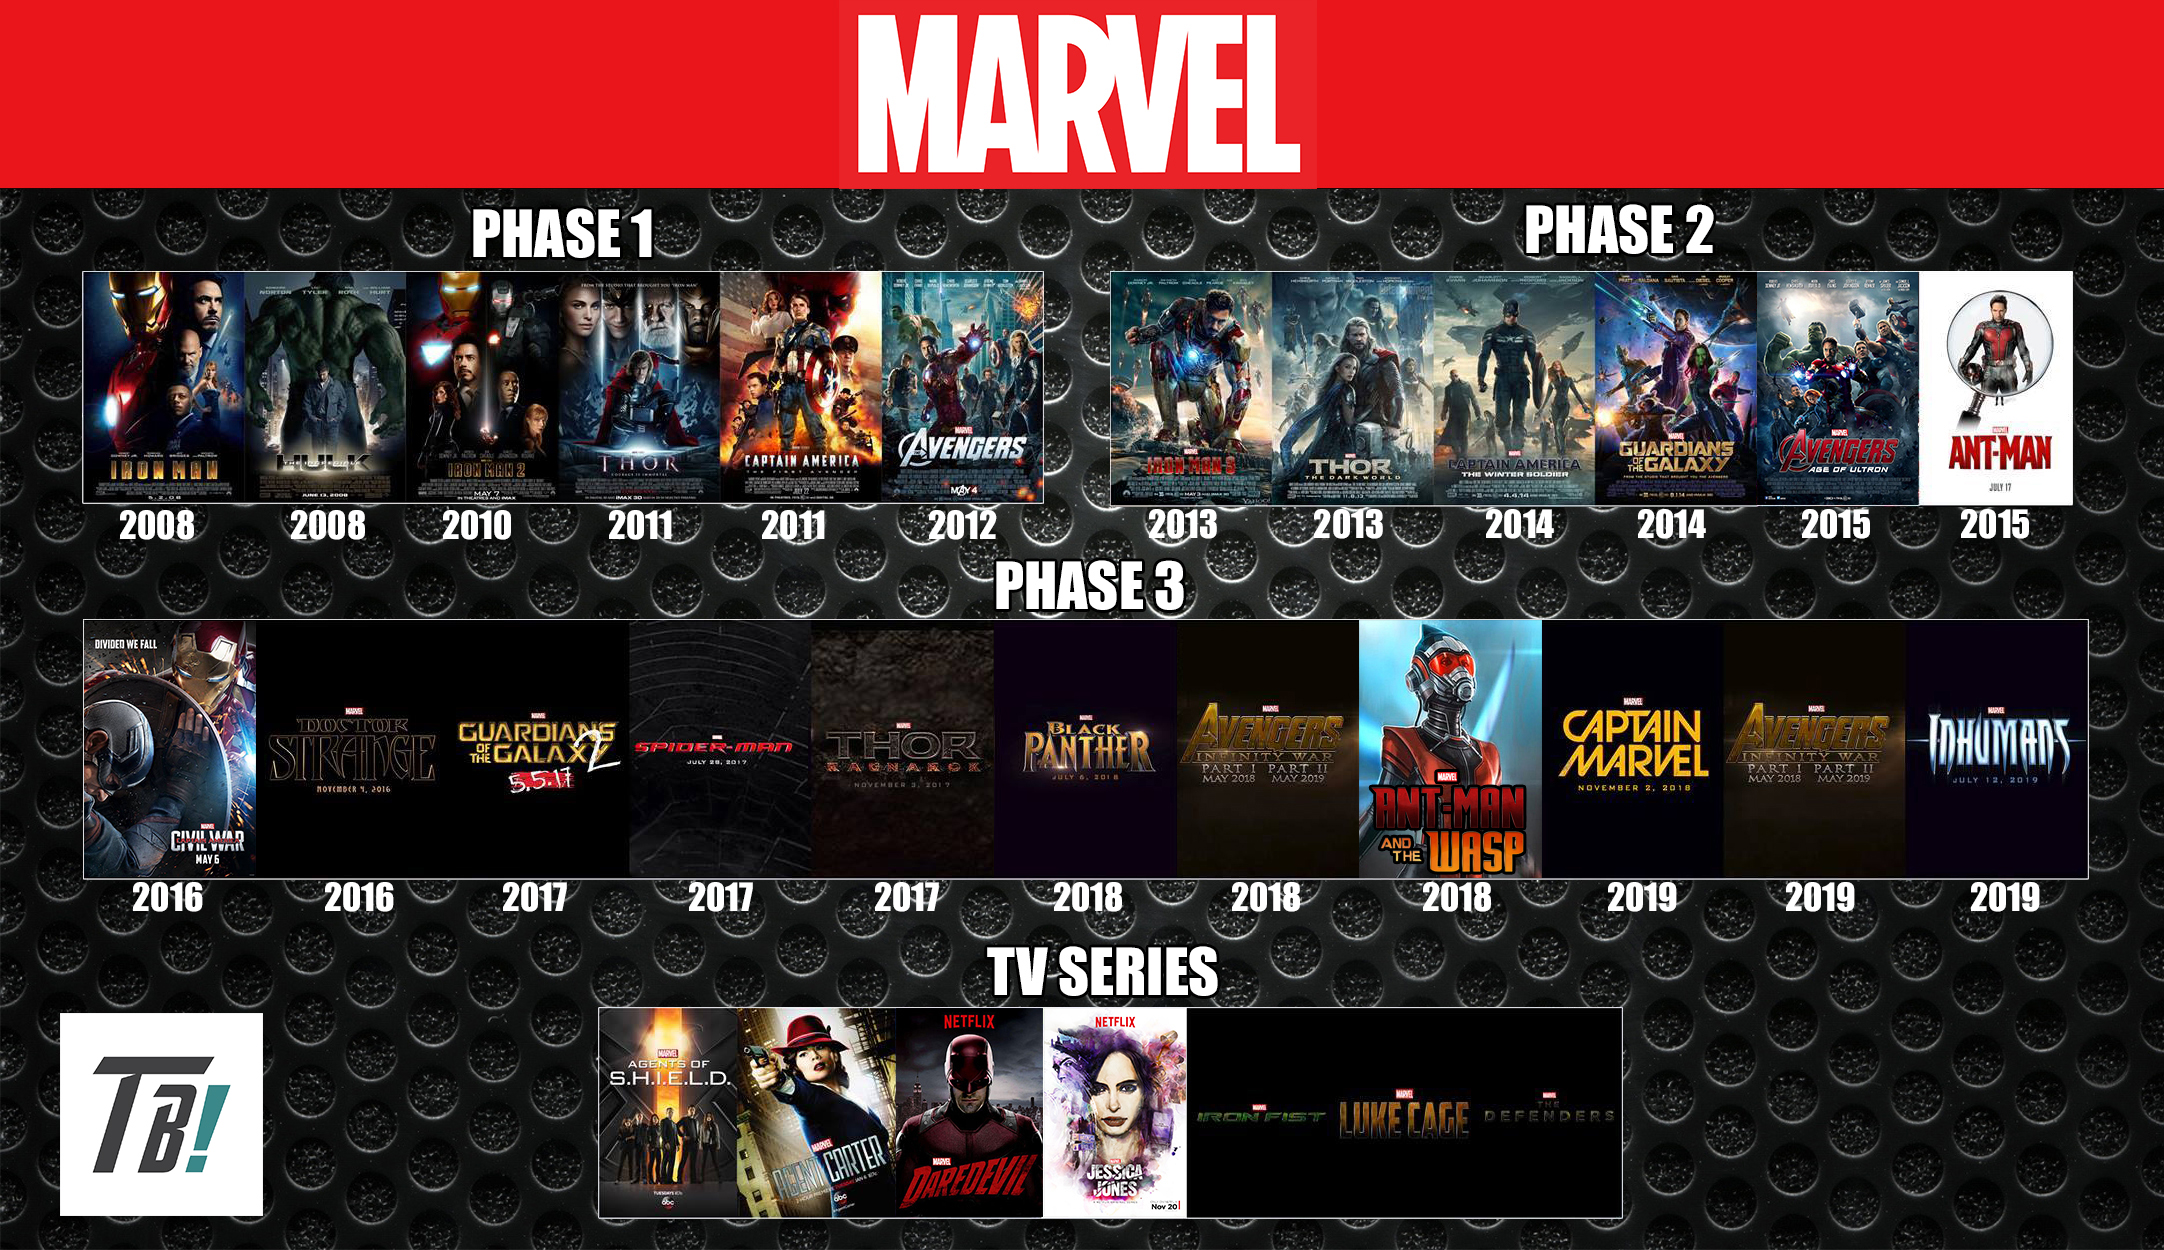 Ordre De Visionnage Des Films Dc Comics Marvel Cinematic Universe Timeline by darkmudkip6 on DeviantArt